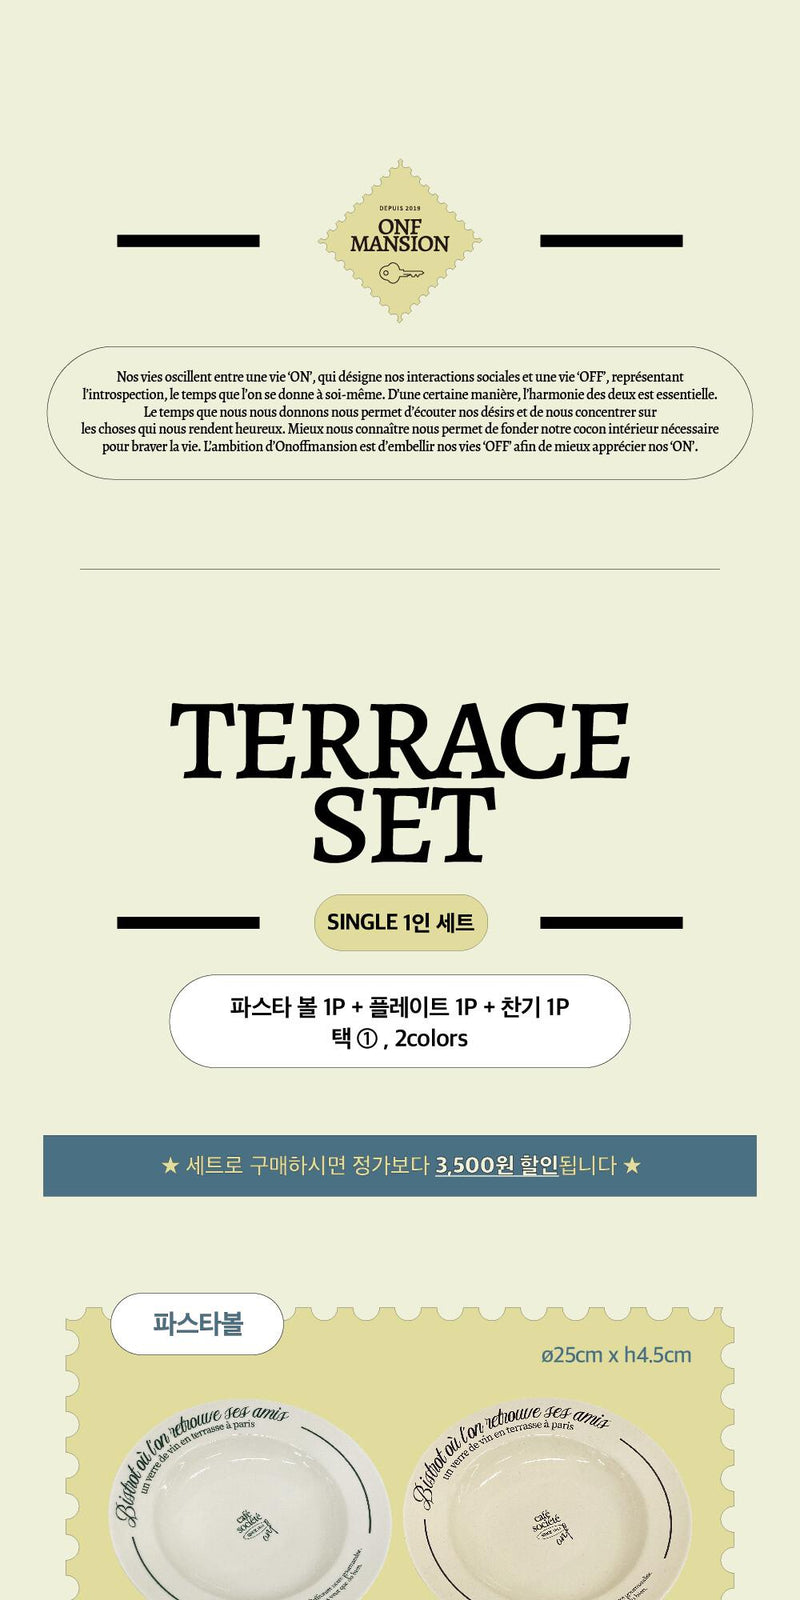 [E.PALETTE] Terrace SET Single Set for 1 person